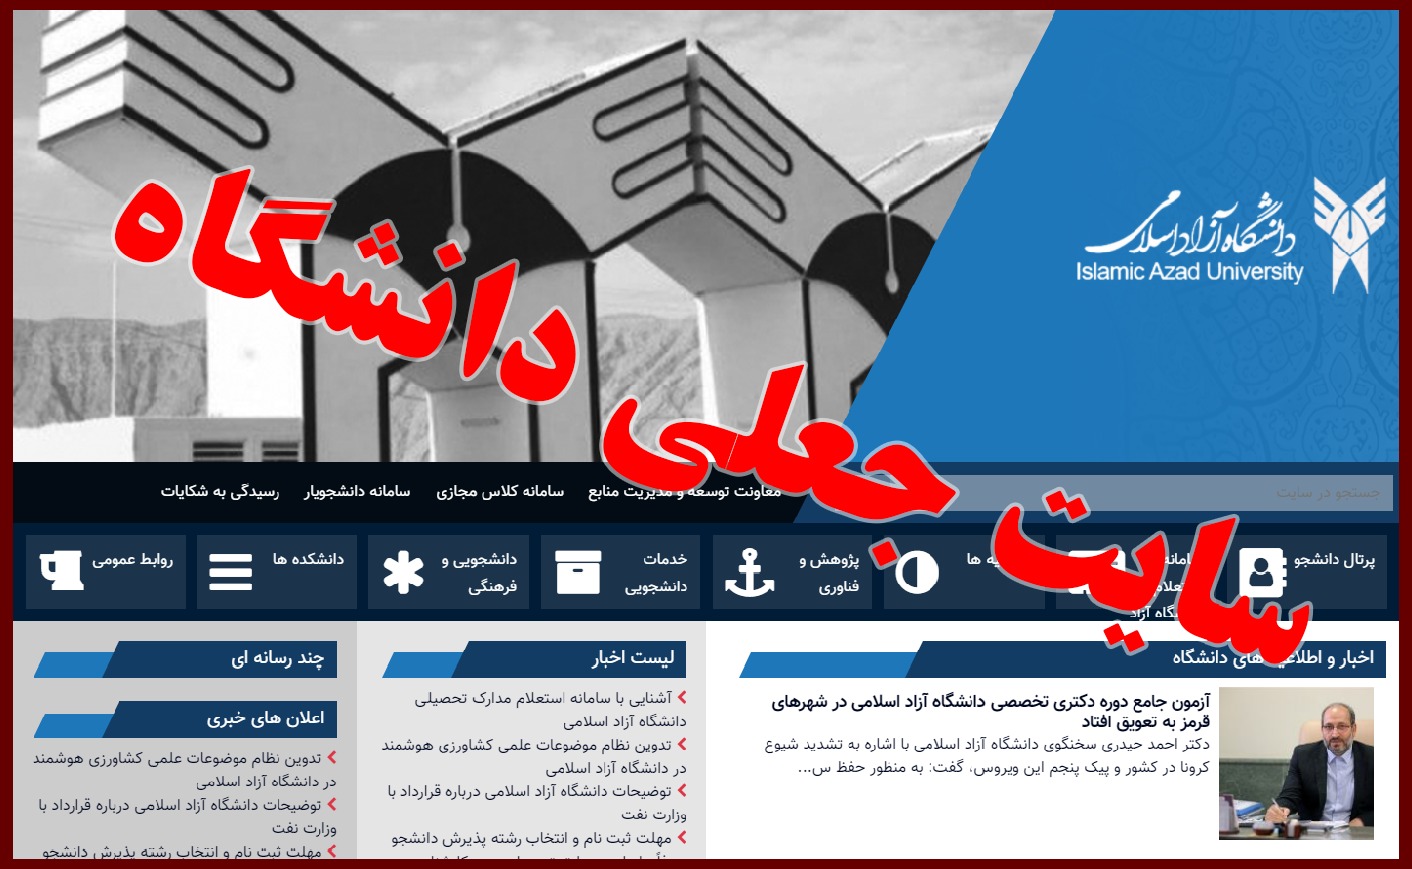 فهرست چند سایت اینترنتی جعلی با عنوان دانشگاه آزاد/ دانشگاه آزاد اسلامی فاقد سایت استعلام مدارک می باشد.